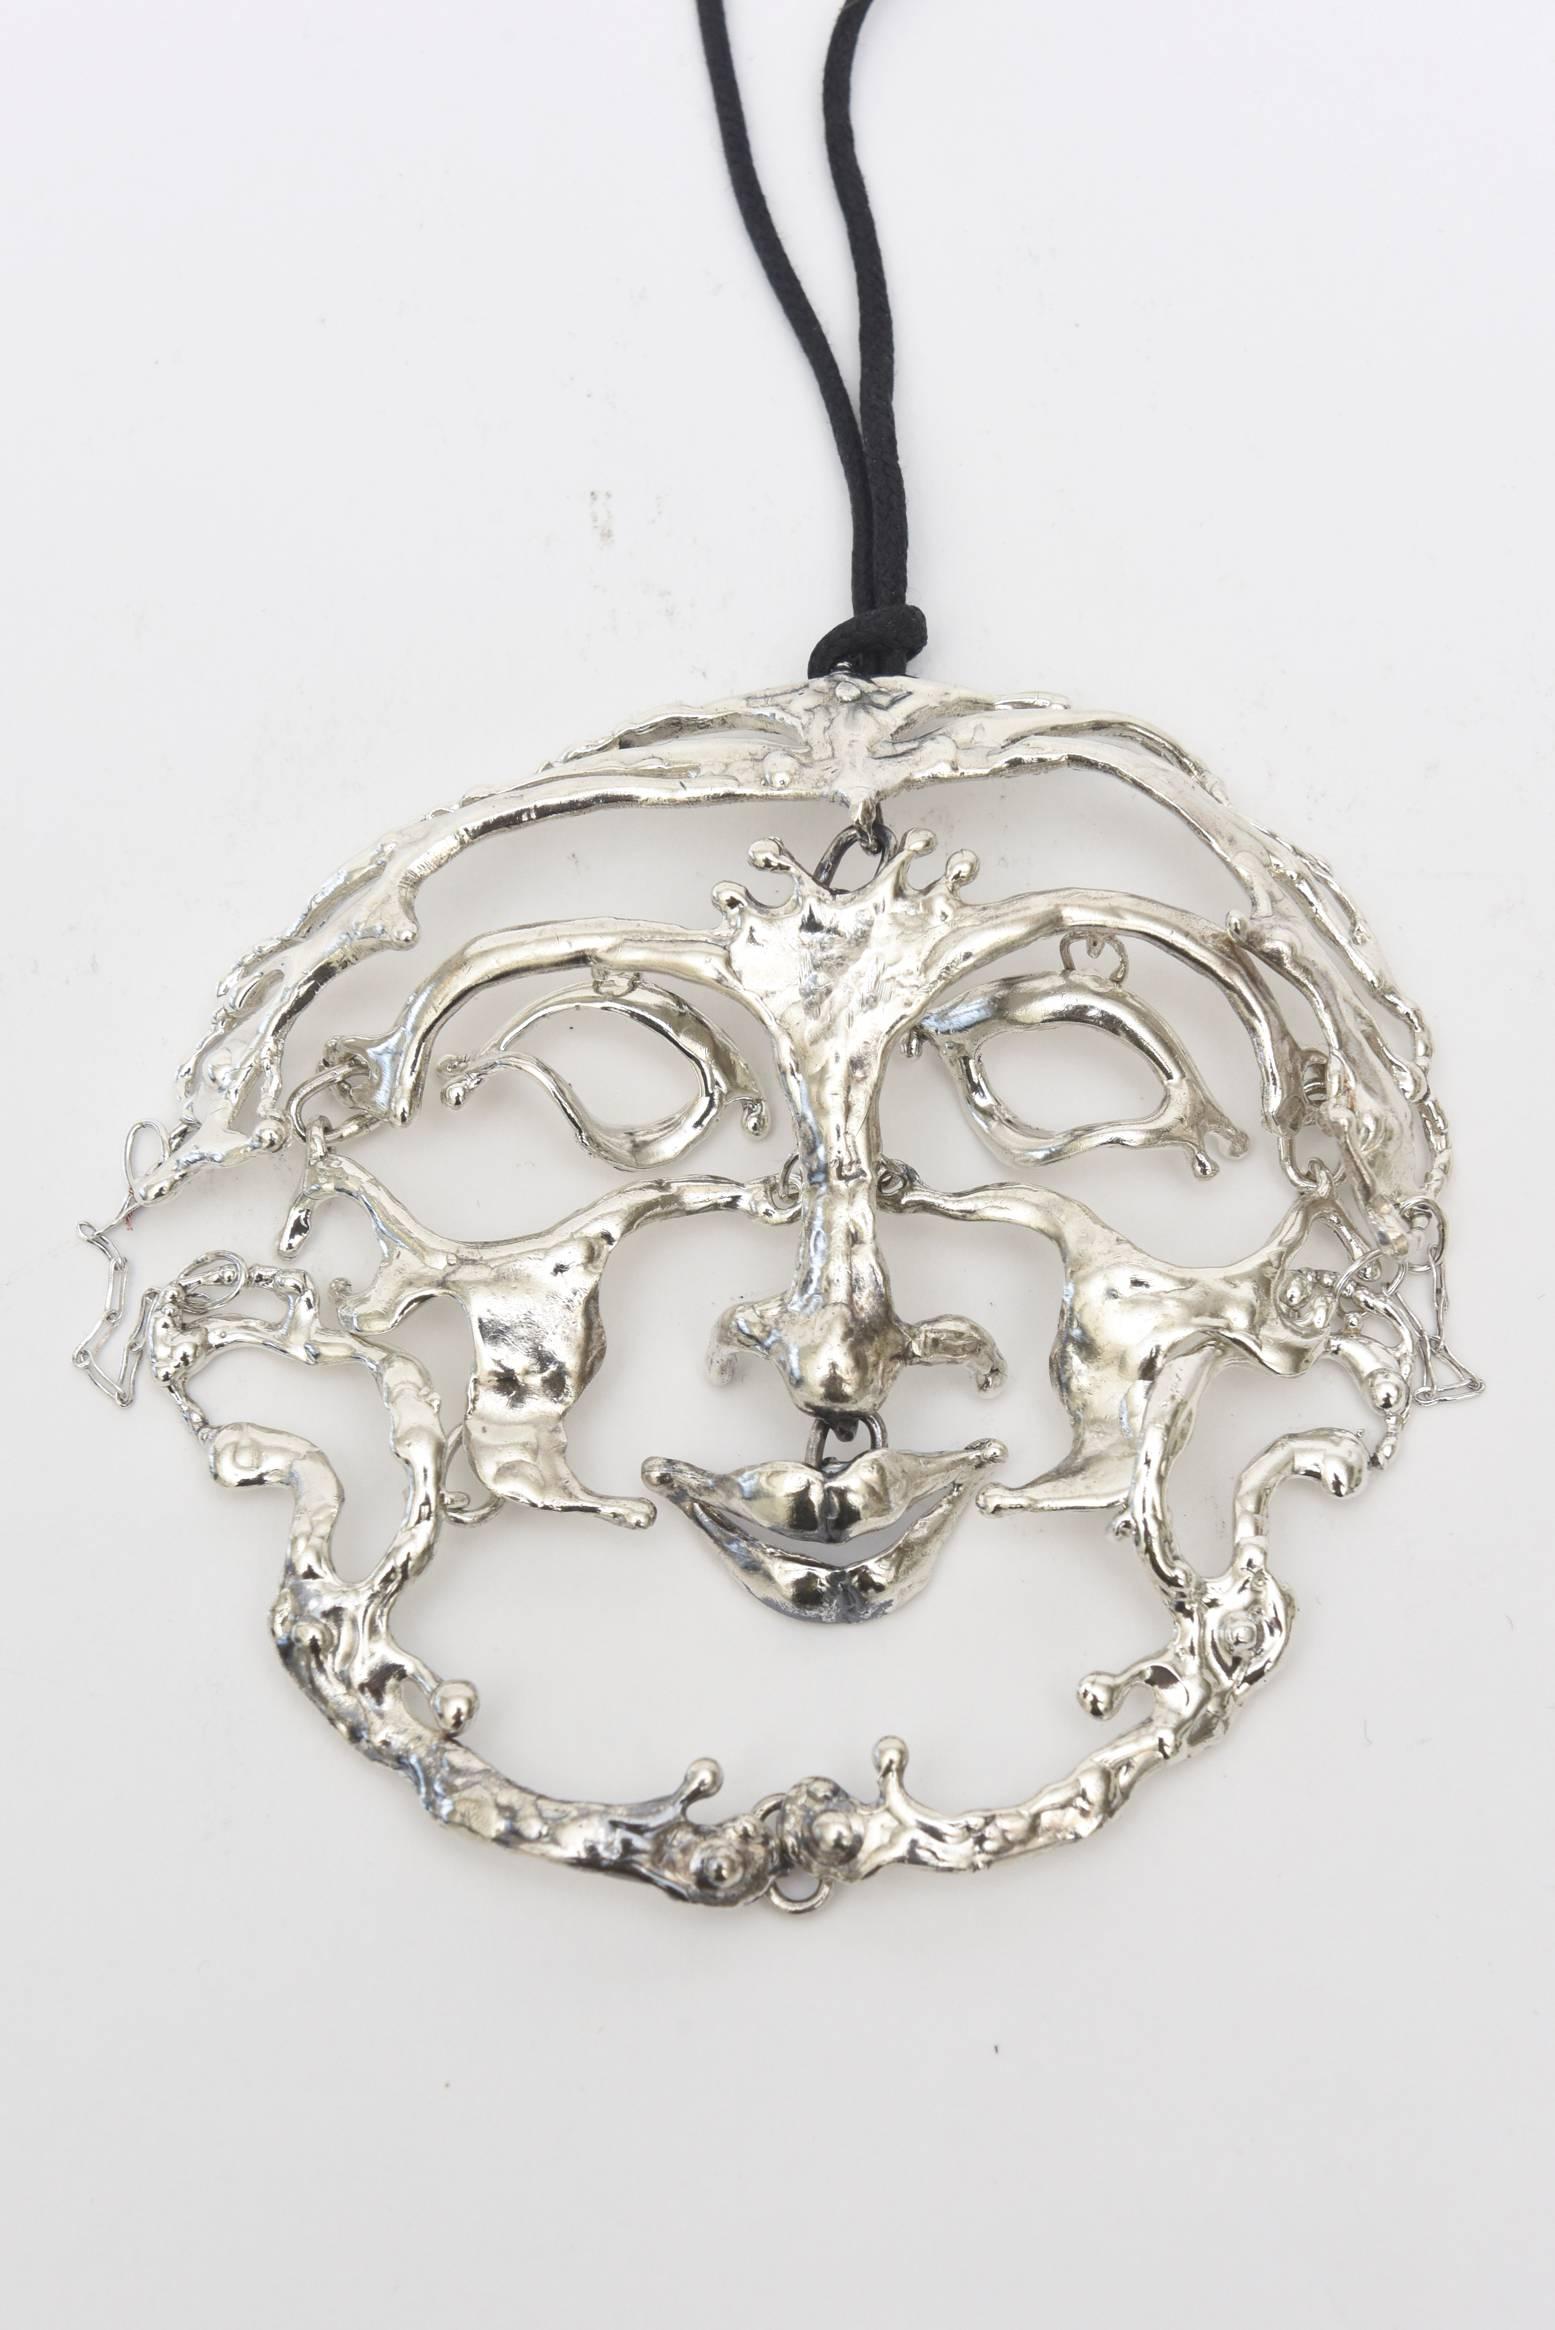 Modern Sterling Silver Salvador Dali Style Sculptural Pendant Necklace Signed Vintage